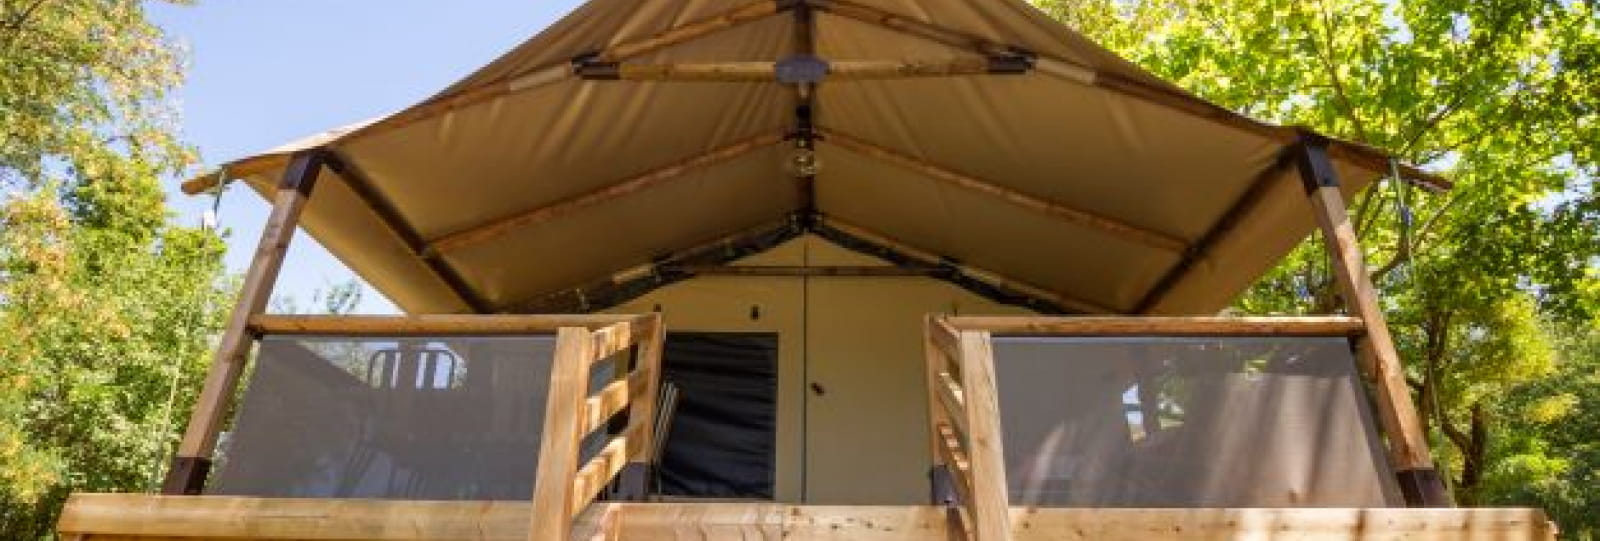 Les tentes lodges sur pilotis au Camping la Bohème